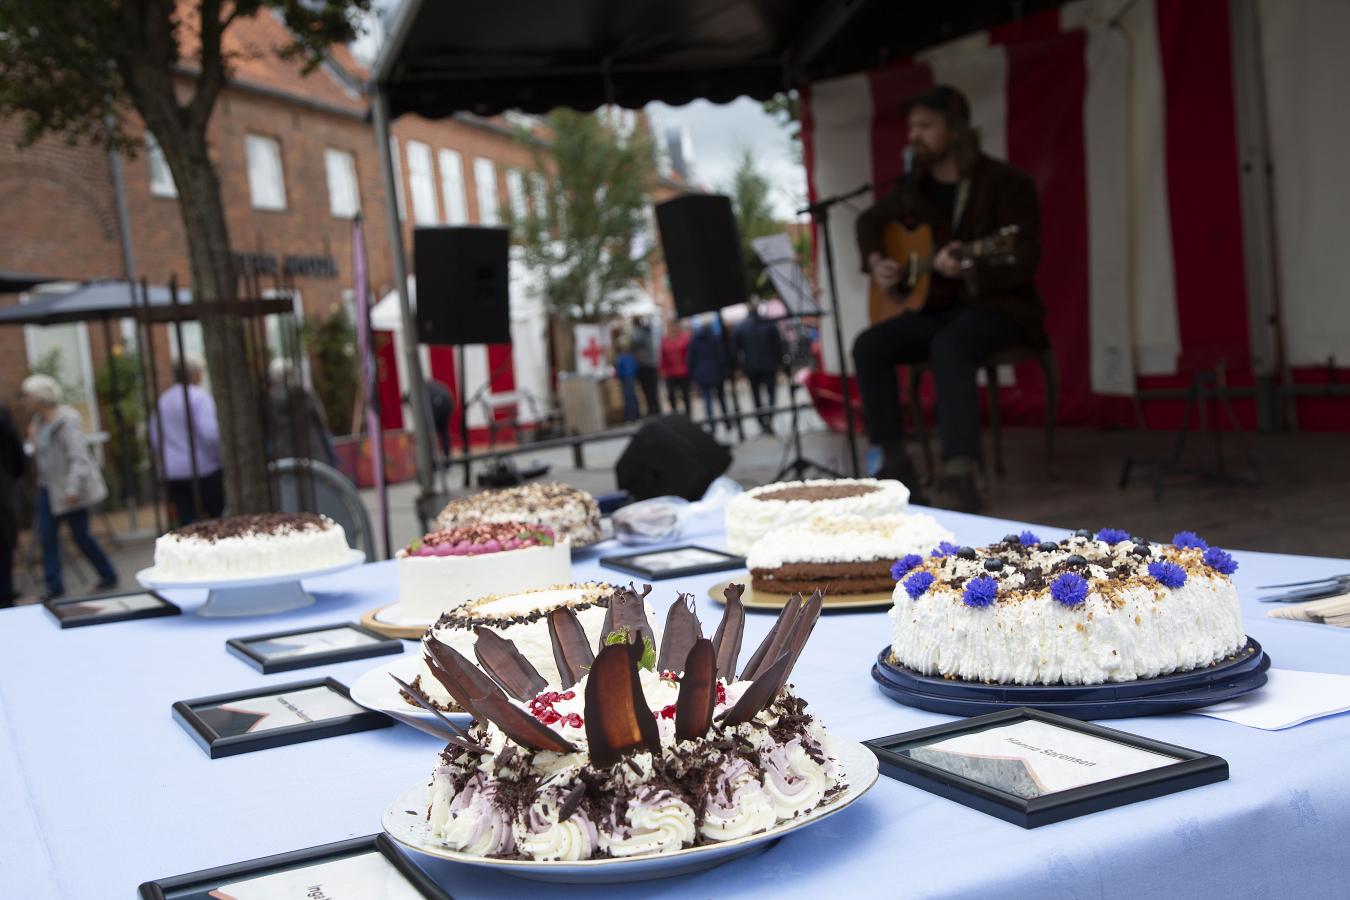 Kuchenfestival in Südjütland: 21 Sorten Kuchen satt! | VisitDenmark